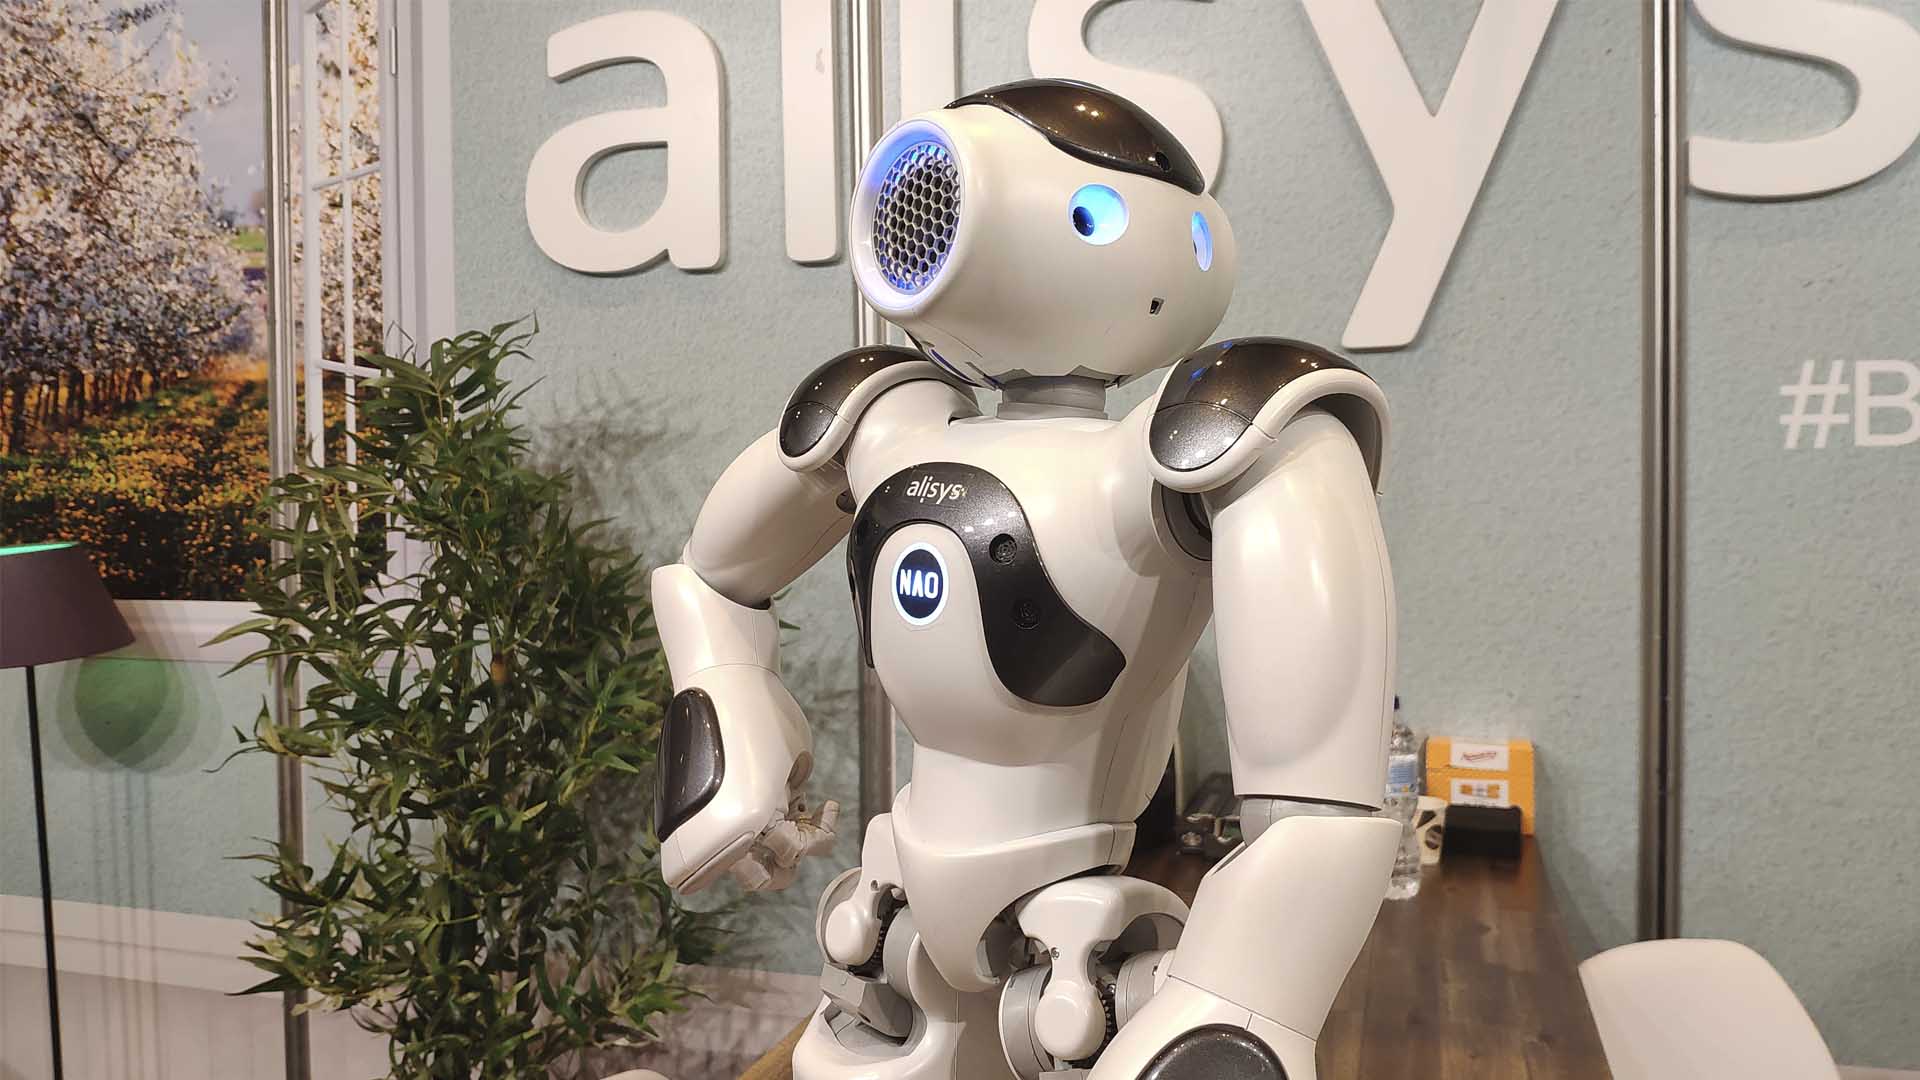 Los 5 robots mas ‘cool’ de la Global Robot Expo 2019